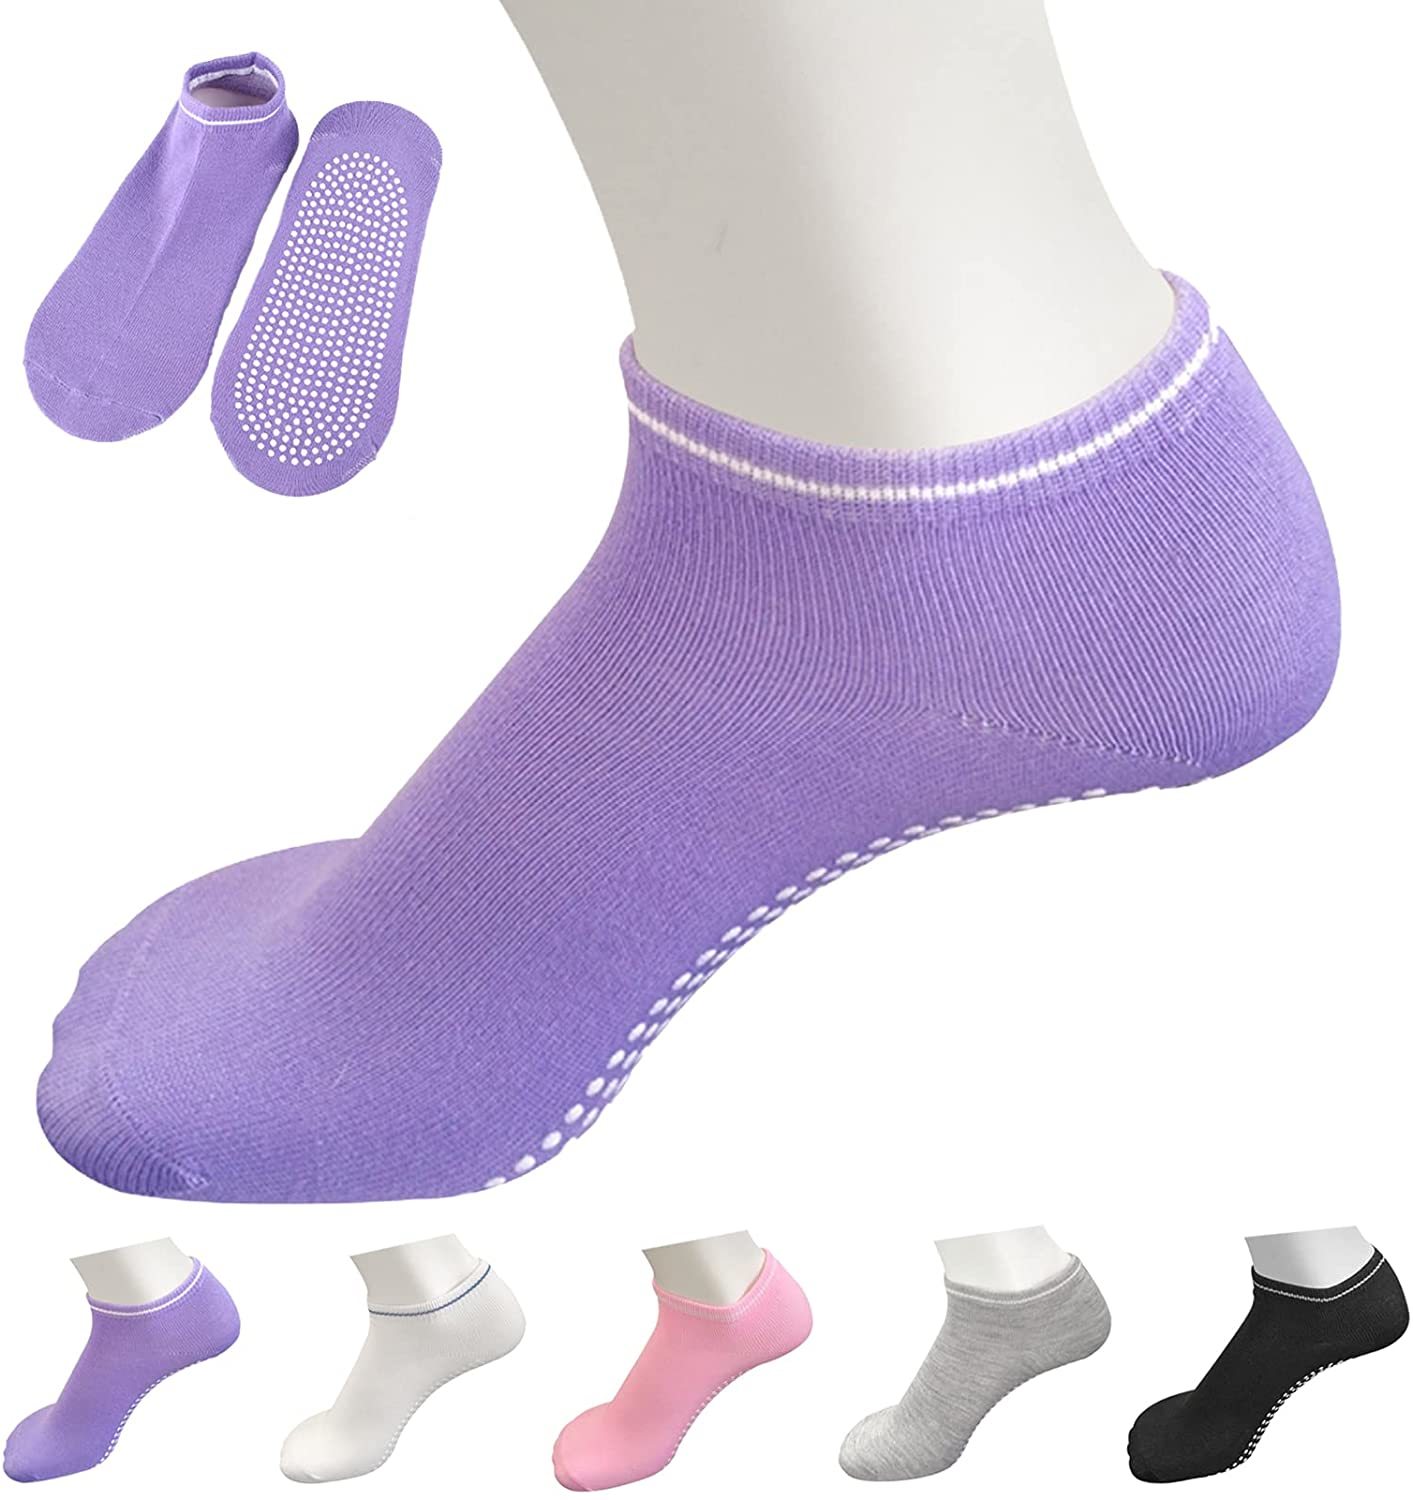 Trampoline Sokken Voor Vrouwen Yoga Sokken Met Grips, Antislip Sport Sokken Voor Pilates, Barre, ballet, Fitness, Workouts, Ziekenhuis